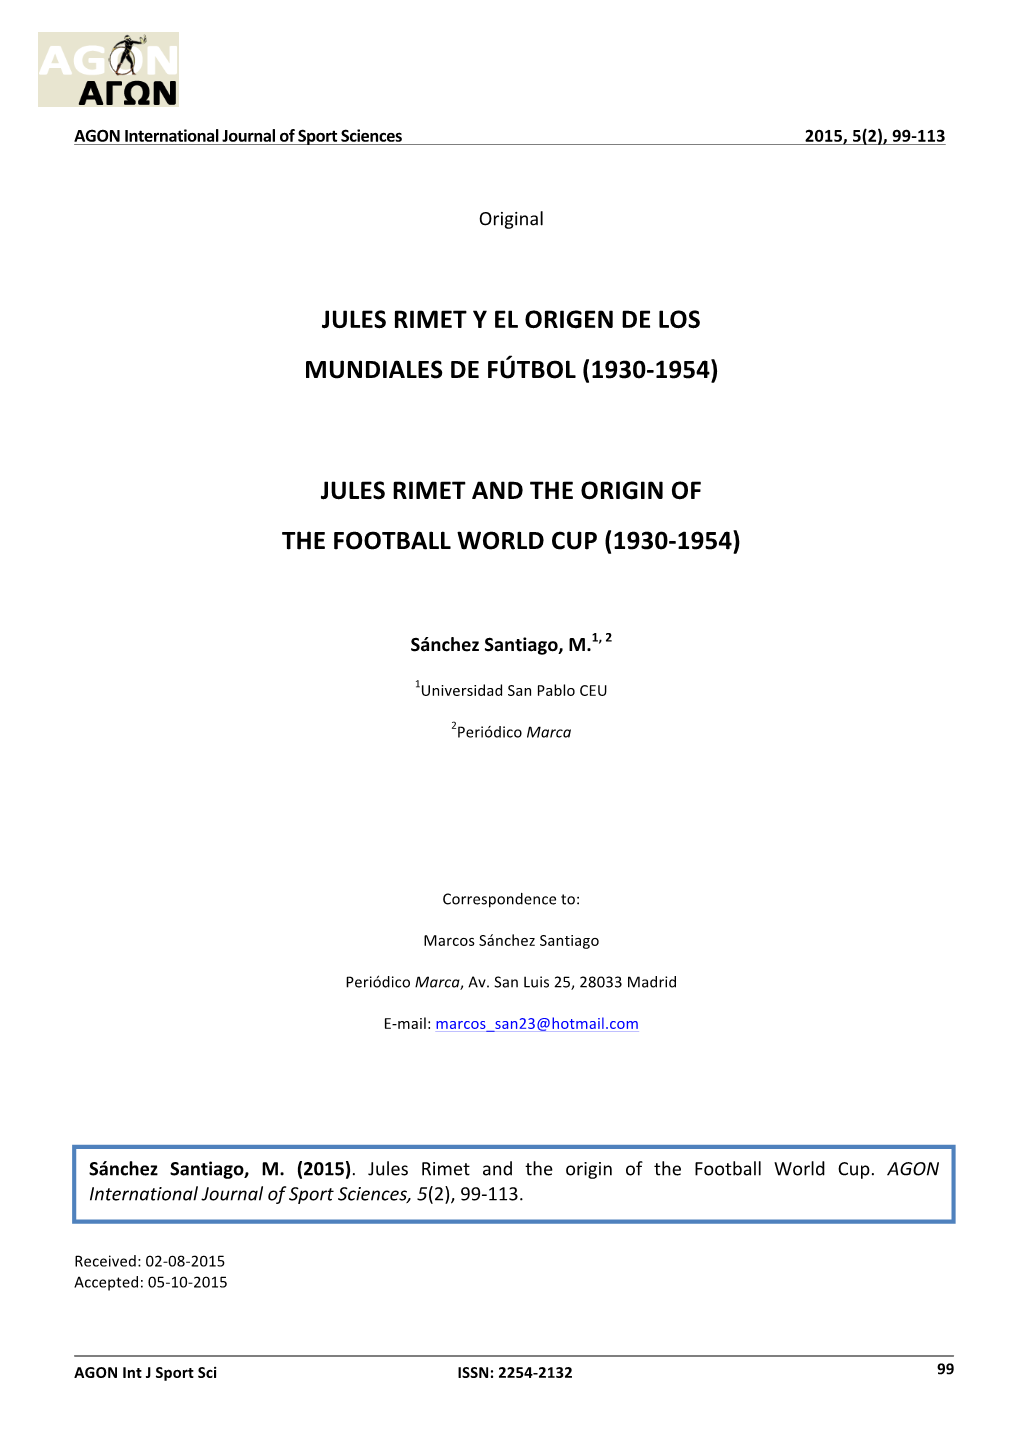 Jules Rimet Y El Origen De Los Mundiales De Fútbol (1930-1954)